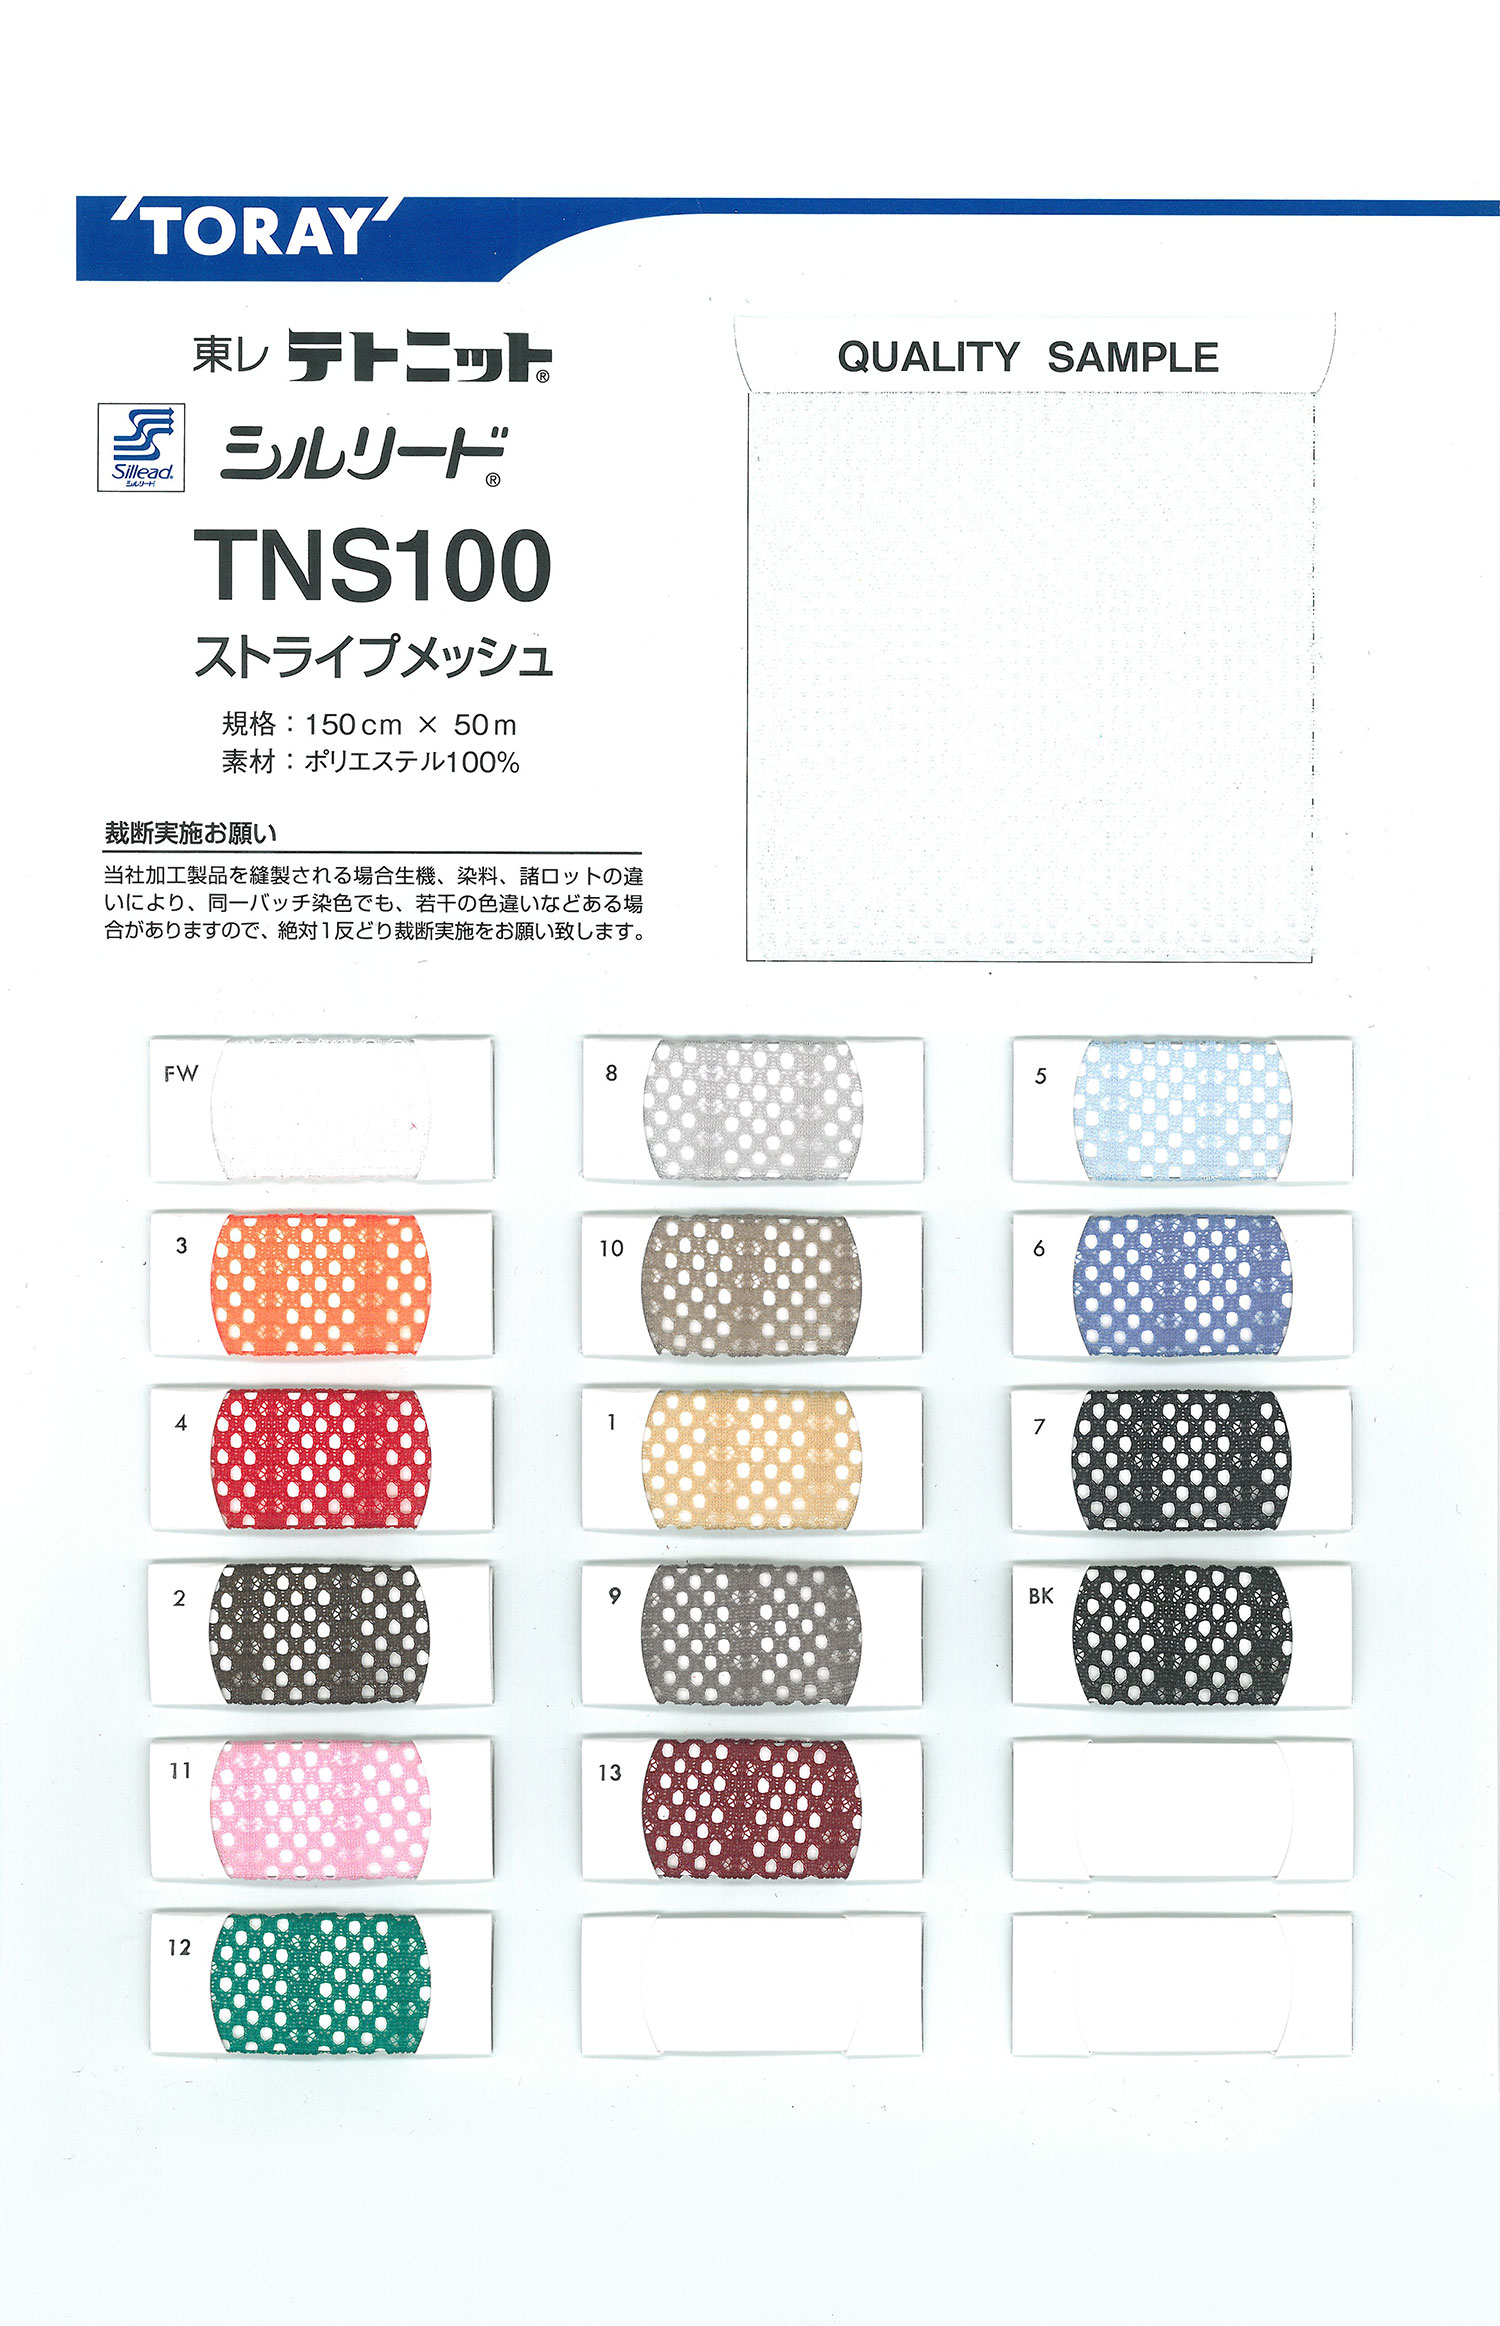 TNS100 Sillead TNS100條紋網布[里料] TORAY